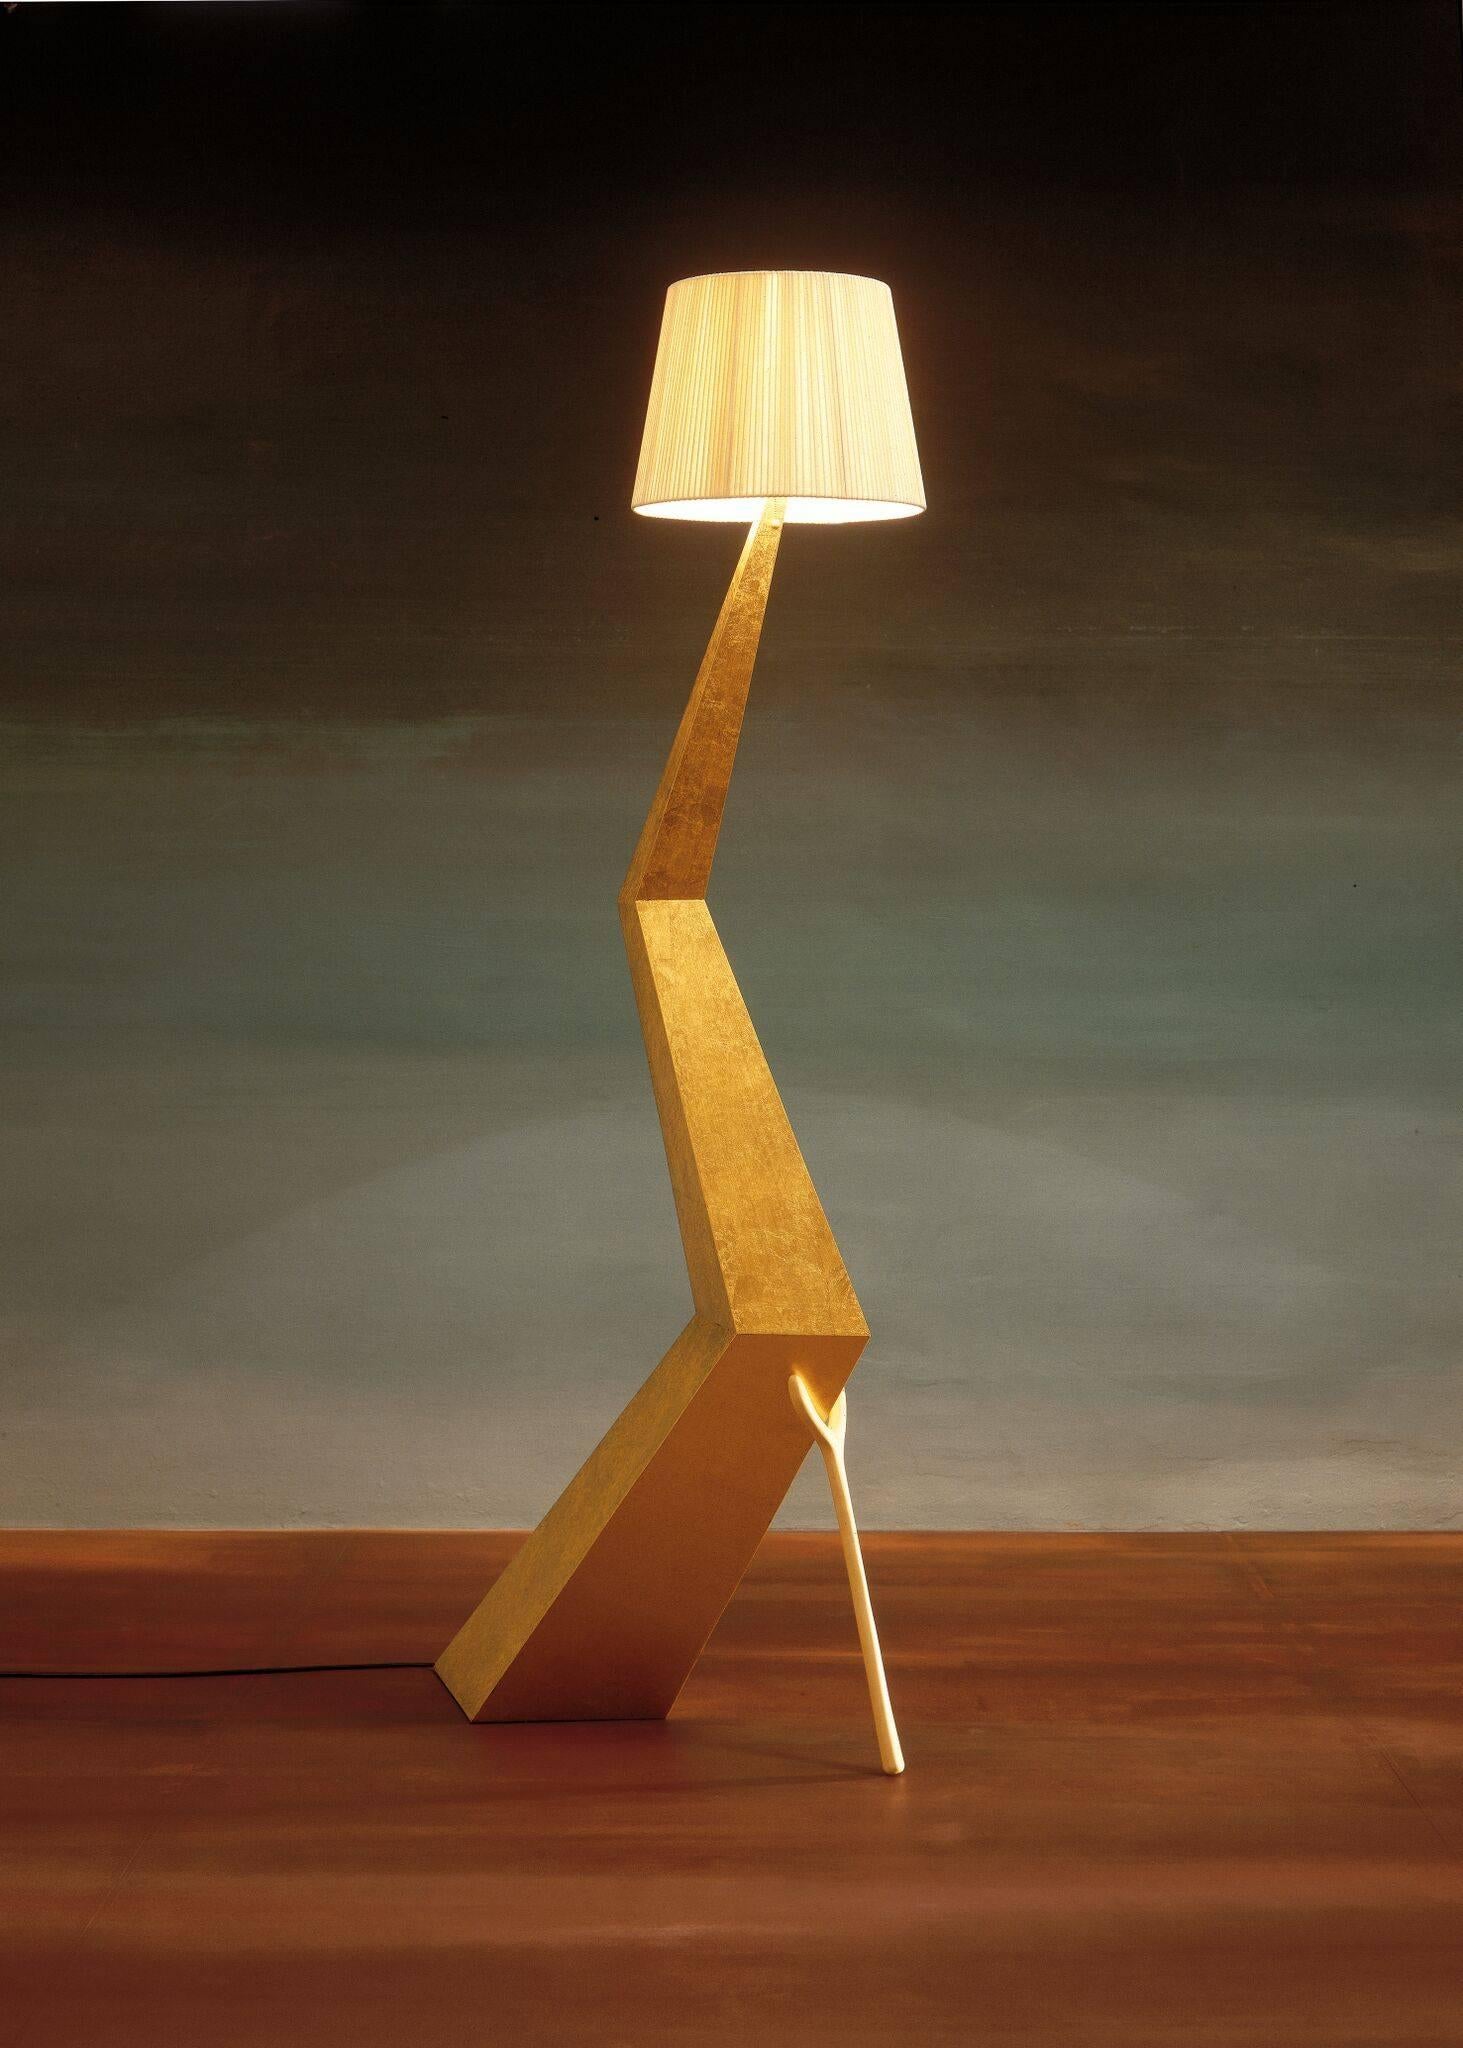 Bracelli Lampe entworfen von Dali hergestellt von BD seit 2009.

Paneelstruktur mit feinem Blattgold überzogen und nachgedunkelt.
Lampenschirm in schwarzer Farbe Baumwolle und Viskose.

Maße: 37 x 64 x H.180 cm

Limitierte Auflage von 105